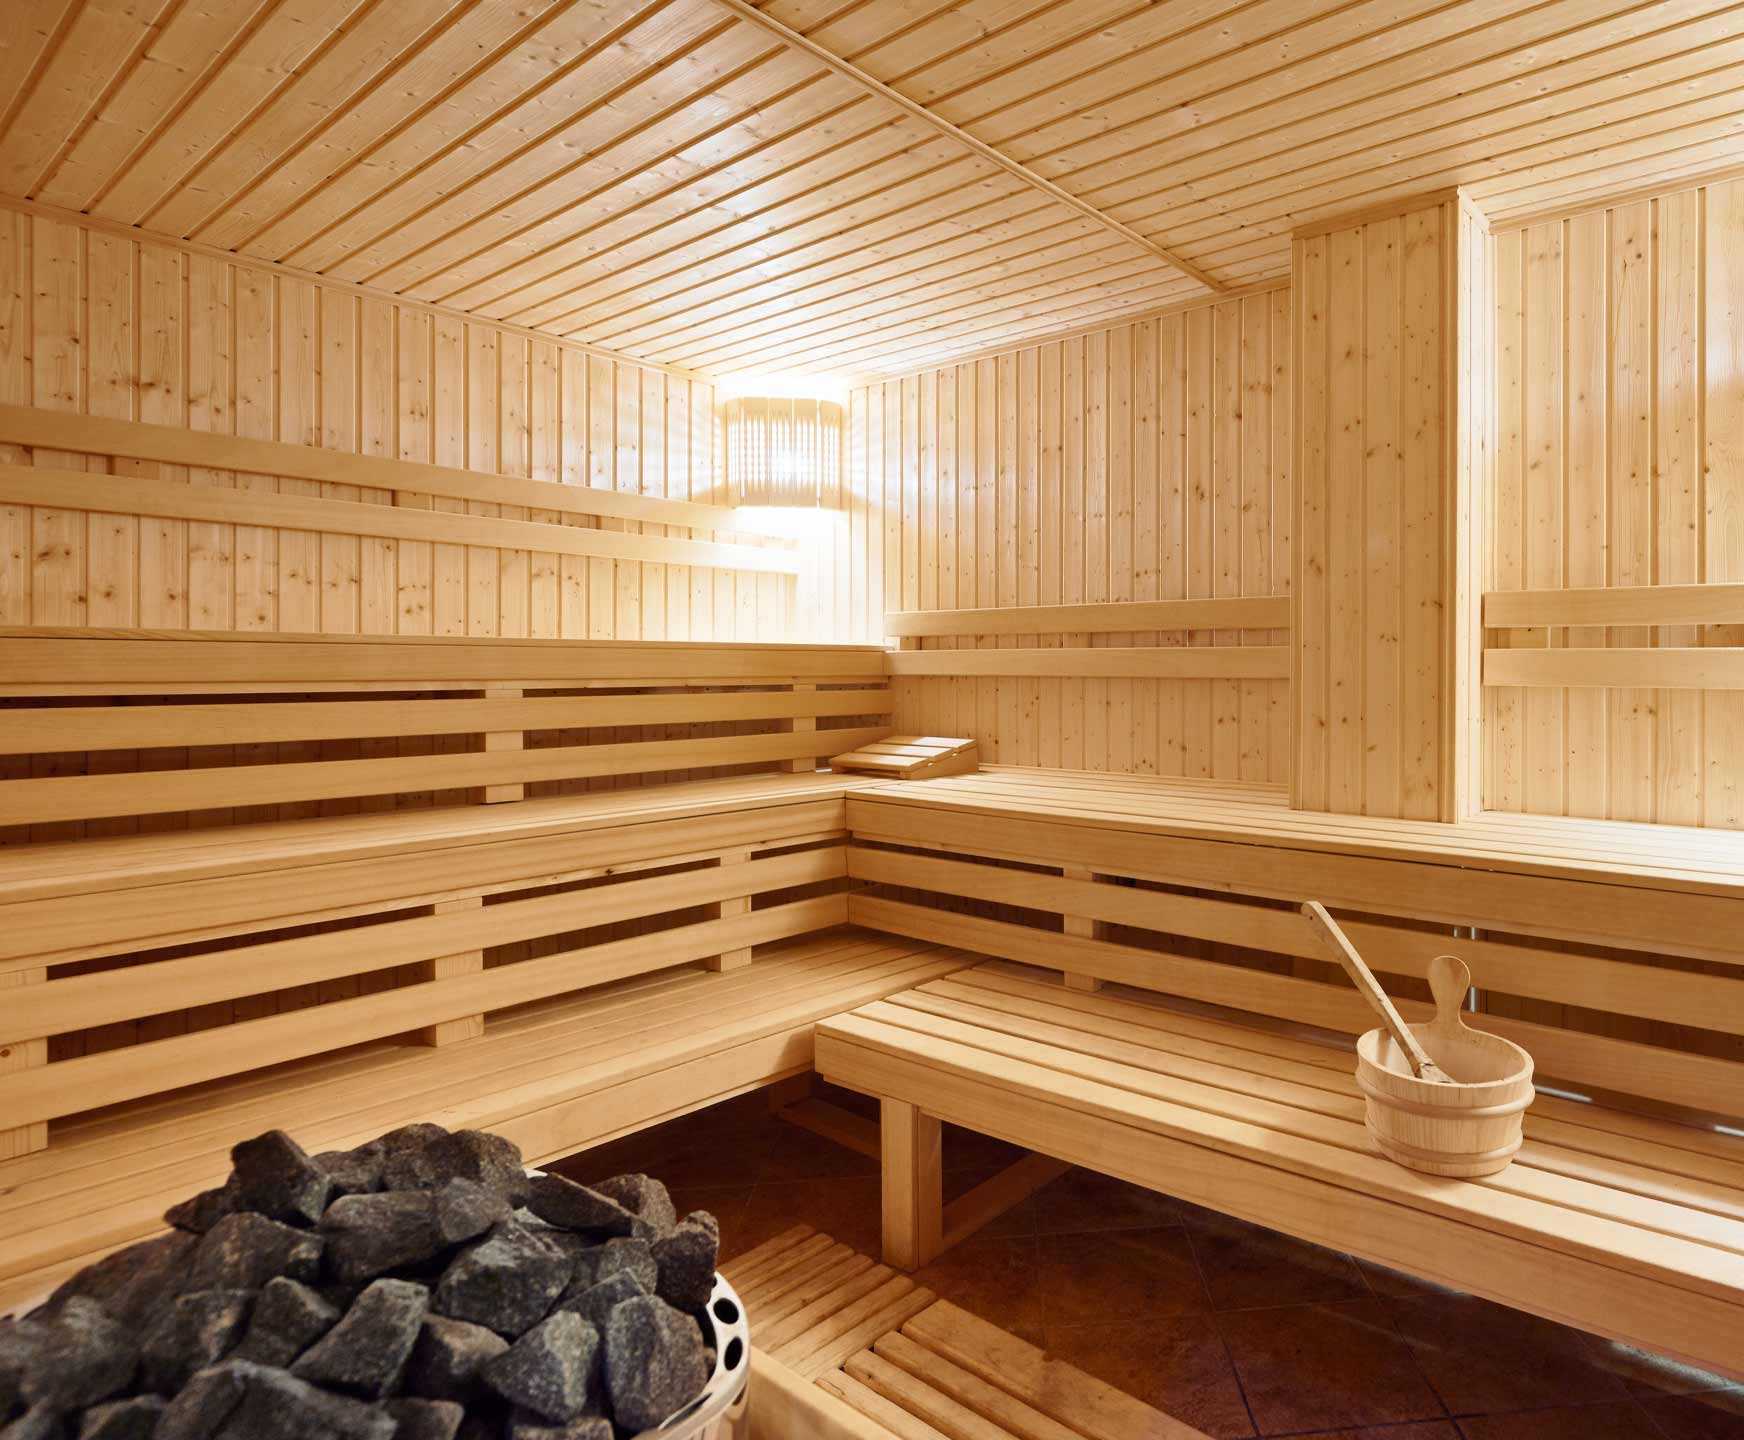 Sauna bei Max Schierer Baustoffe in Cham und Straubing